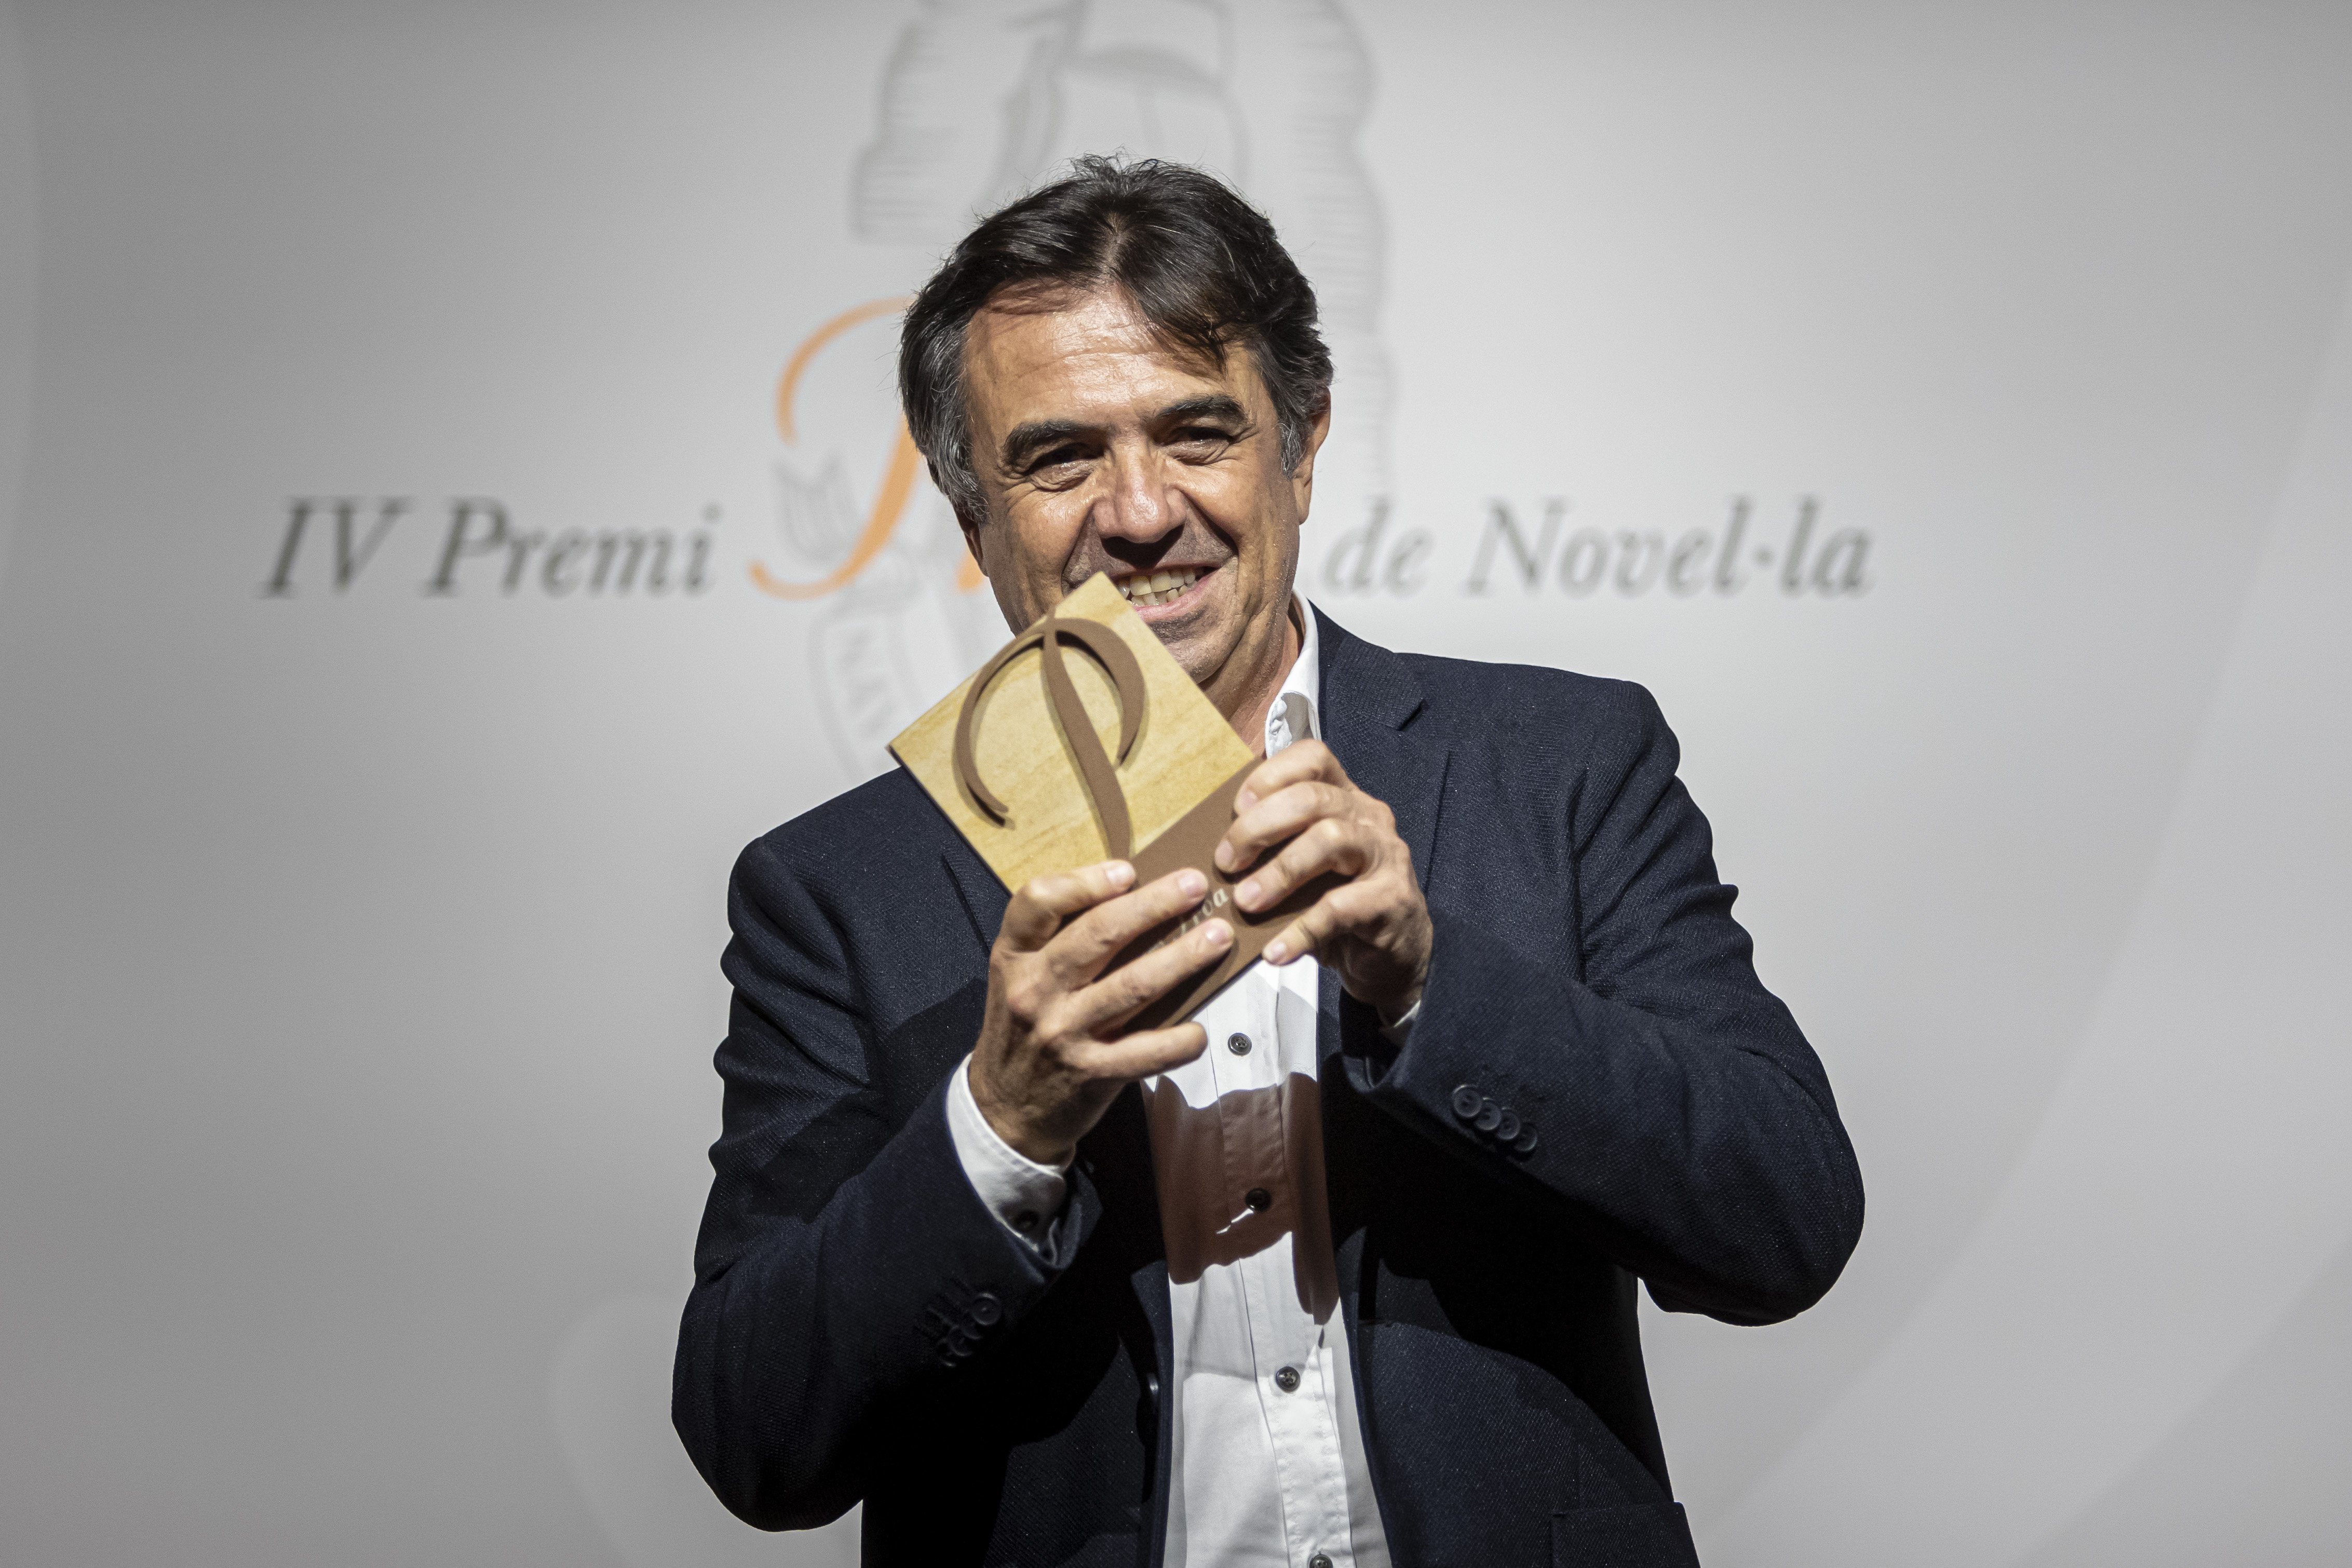 El escritor Martí Domínguez gana el Premi Proa de Novela con 'Mater'